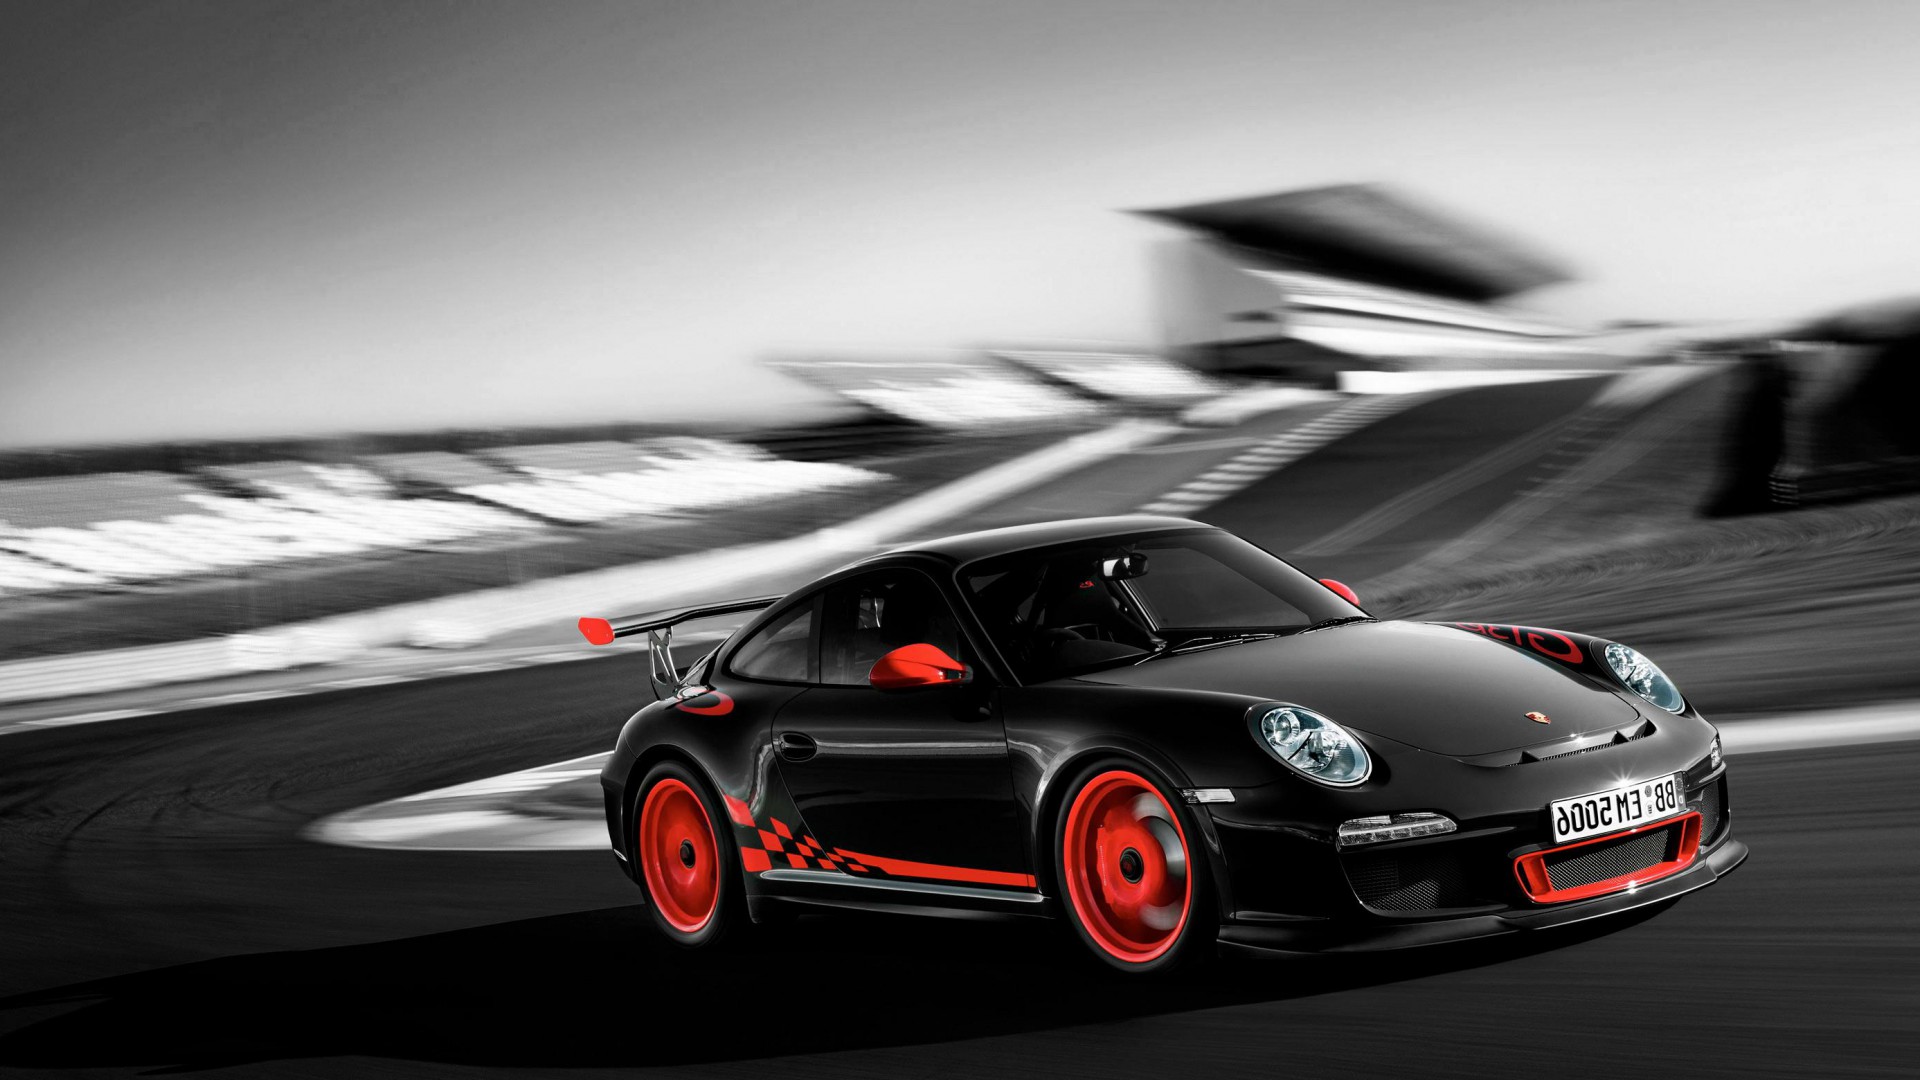 Cool Car Wallpapers Porsche - HD Wallpaper 